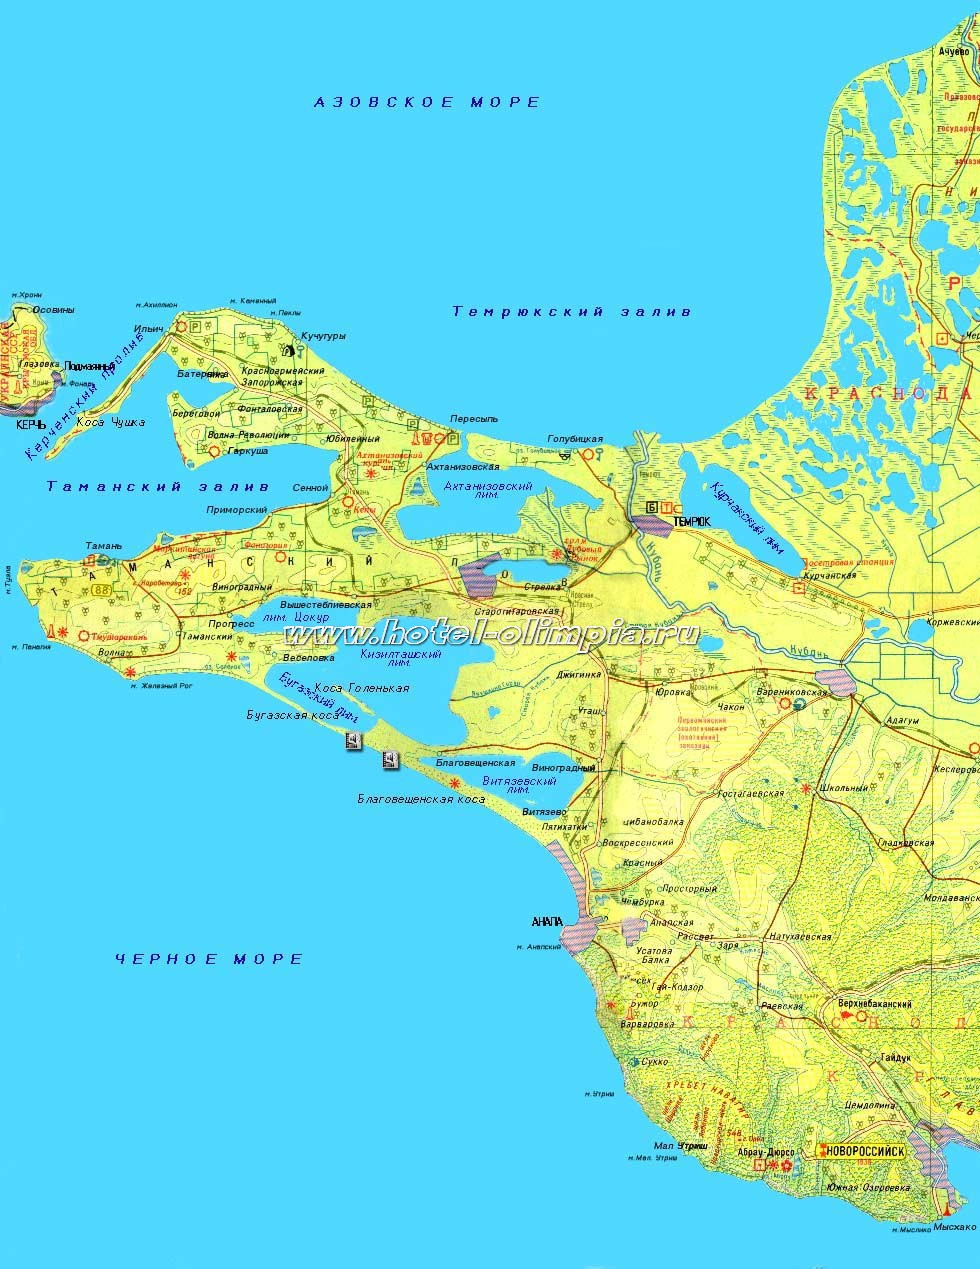 Таманский полуостров. Карта